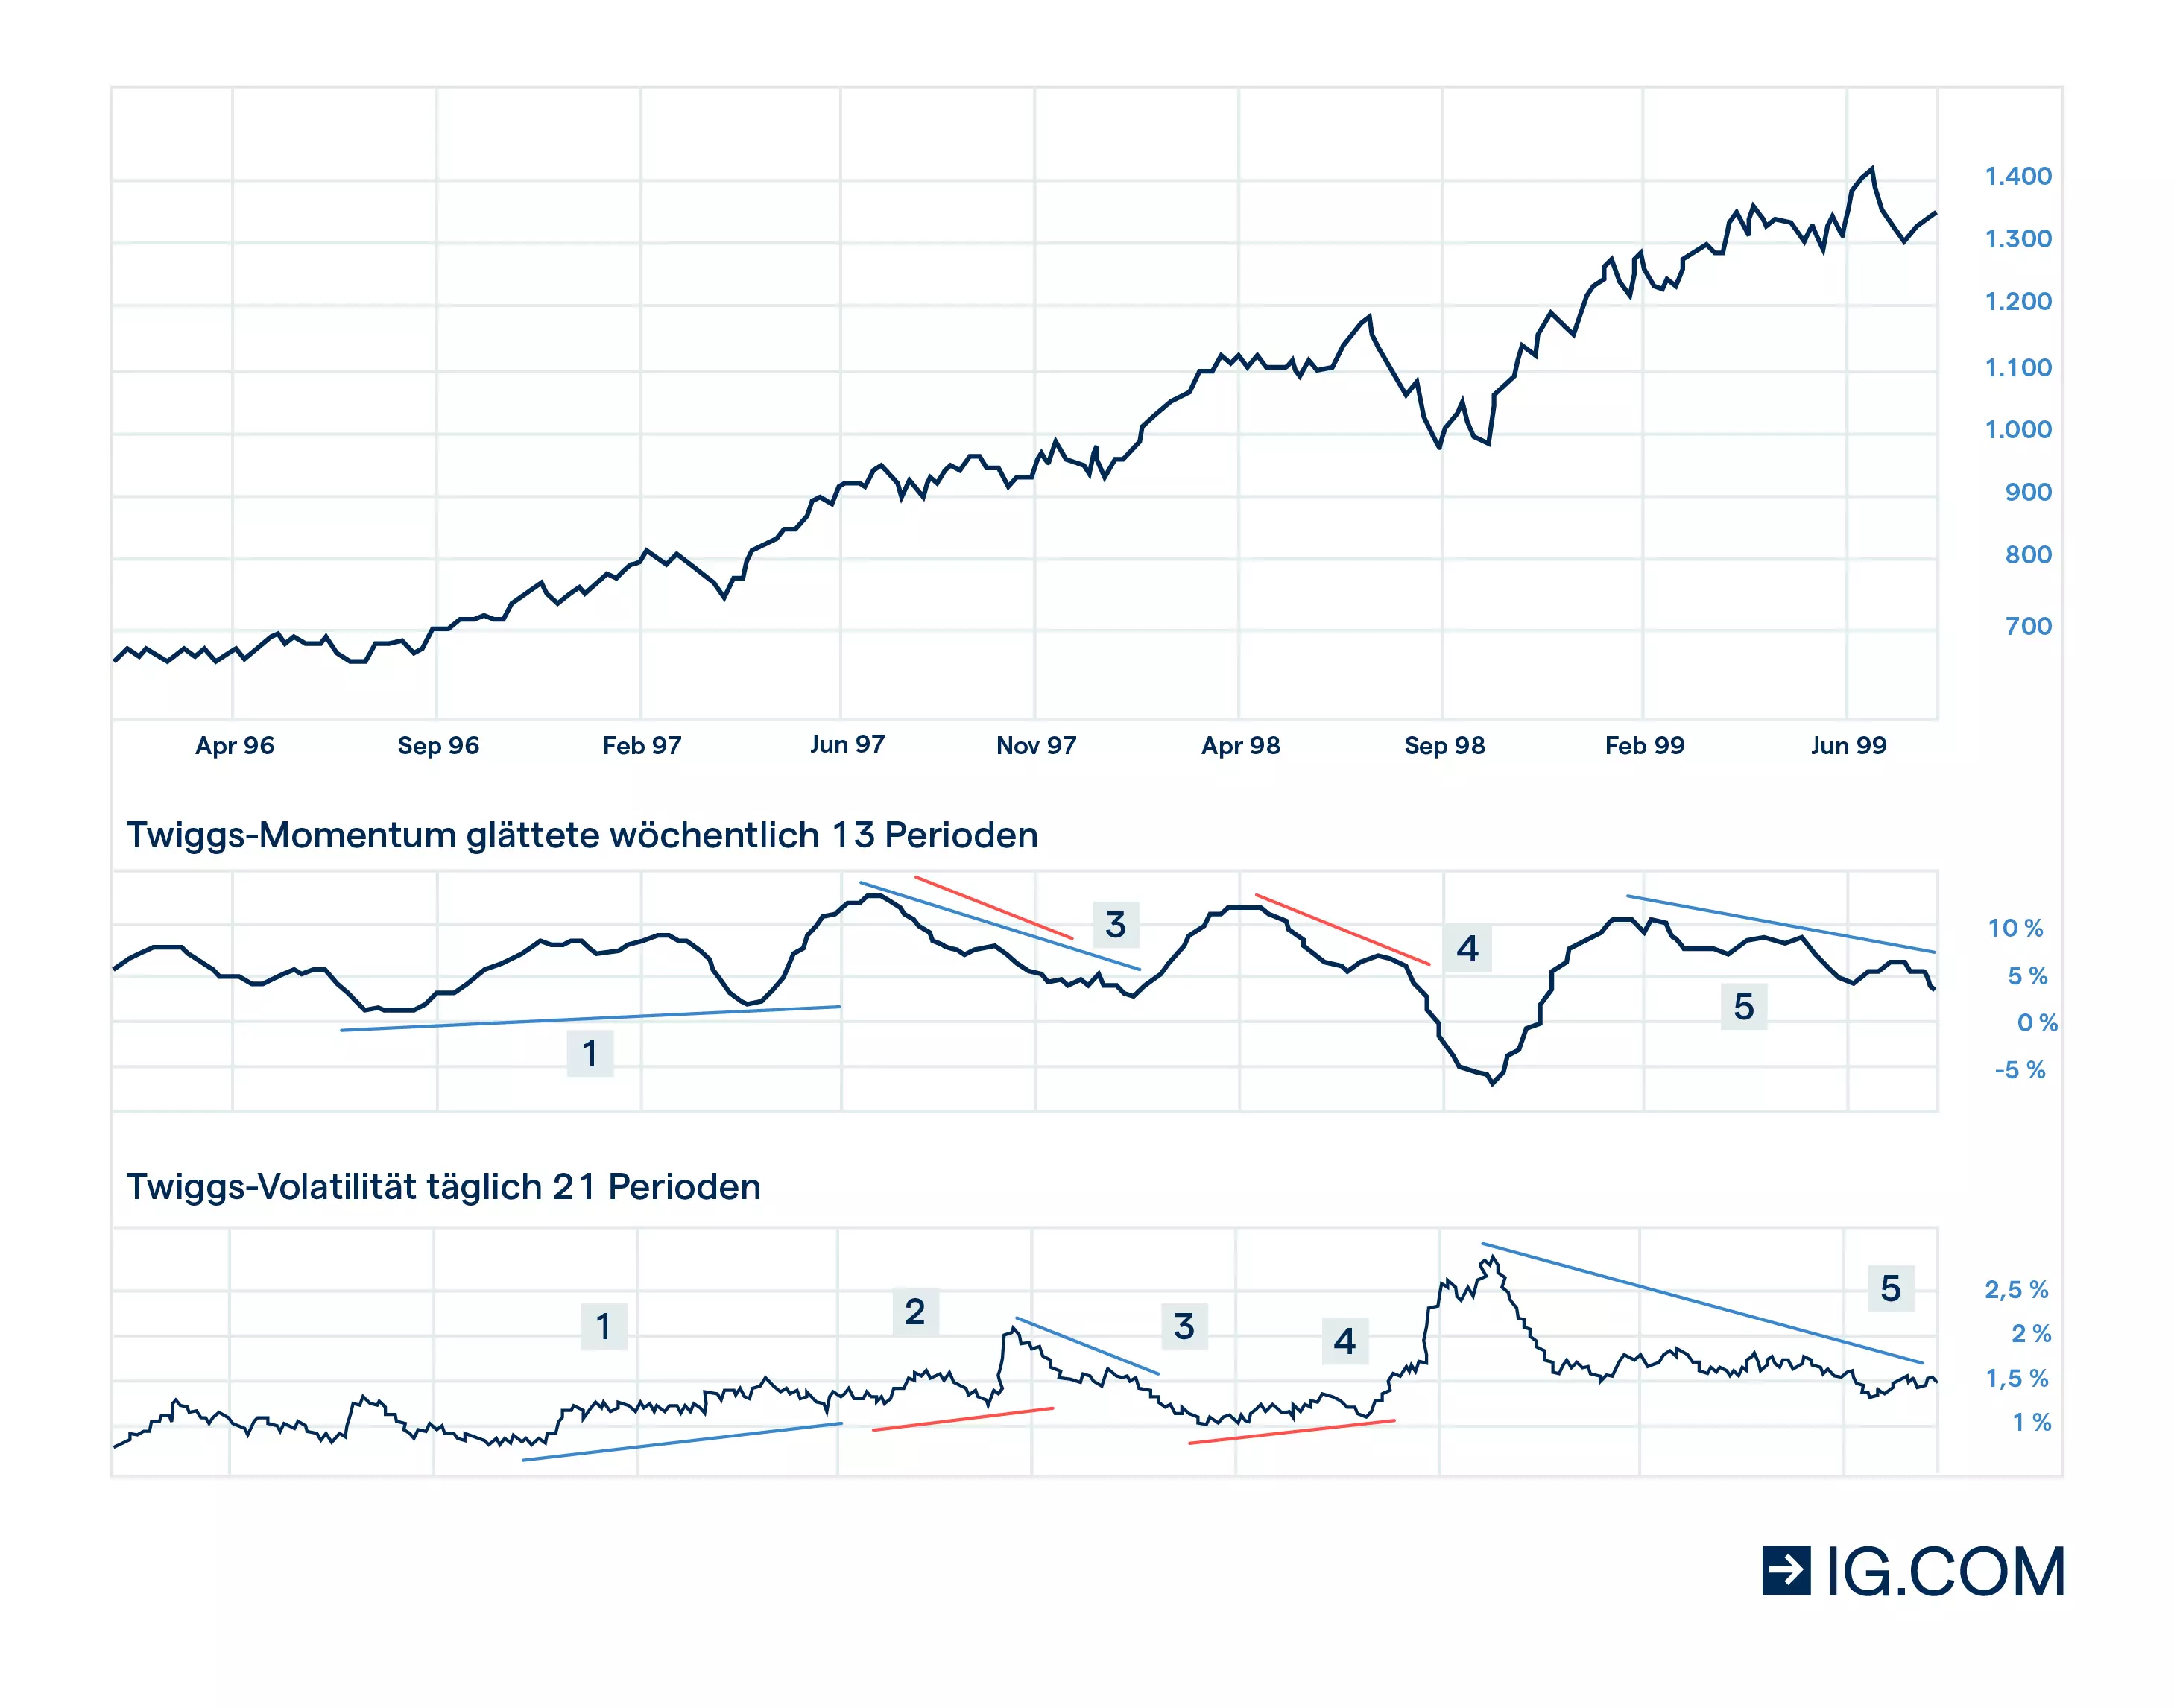 : Twiggs-Volatilitäts-Indikator-Diagramm, das die Volatilität des Markts und das Steigen und Fallen der Preise anzeigt